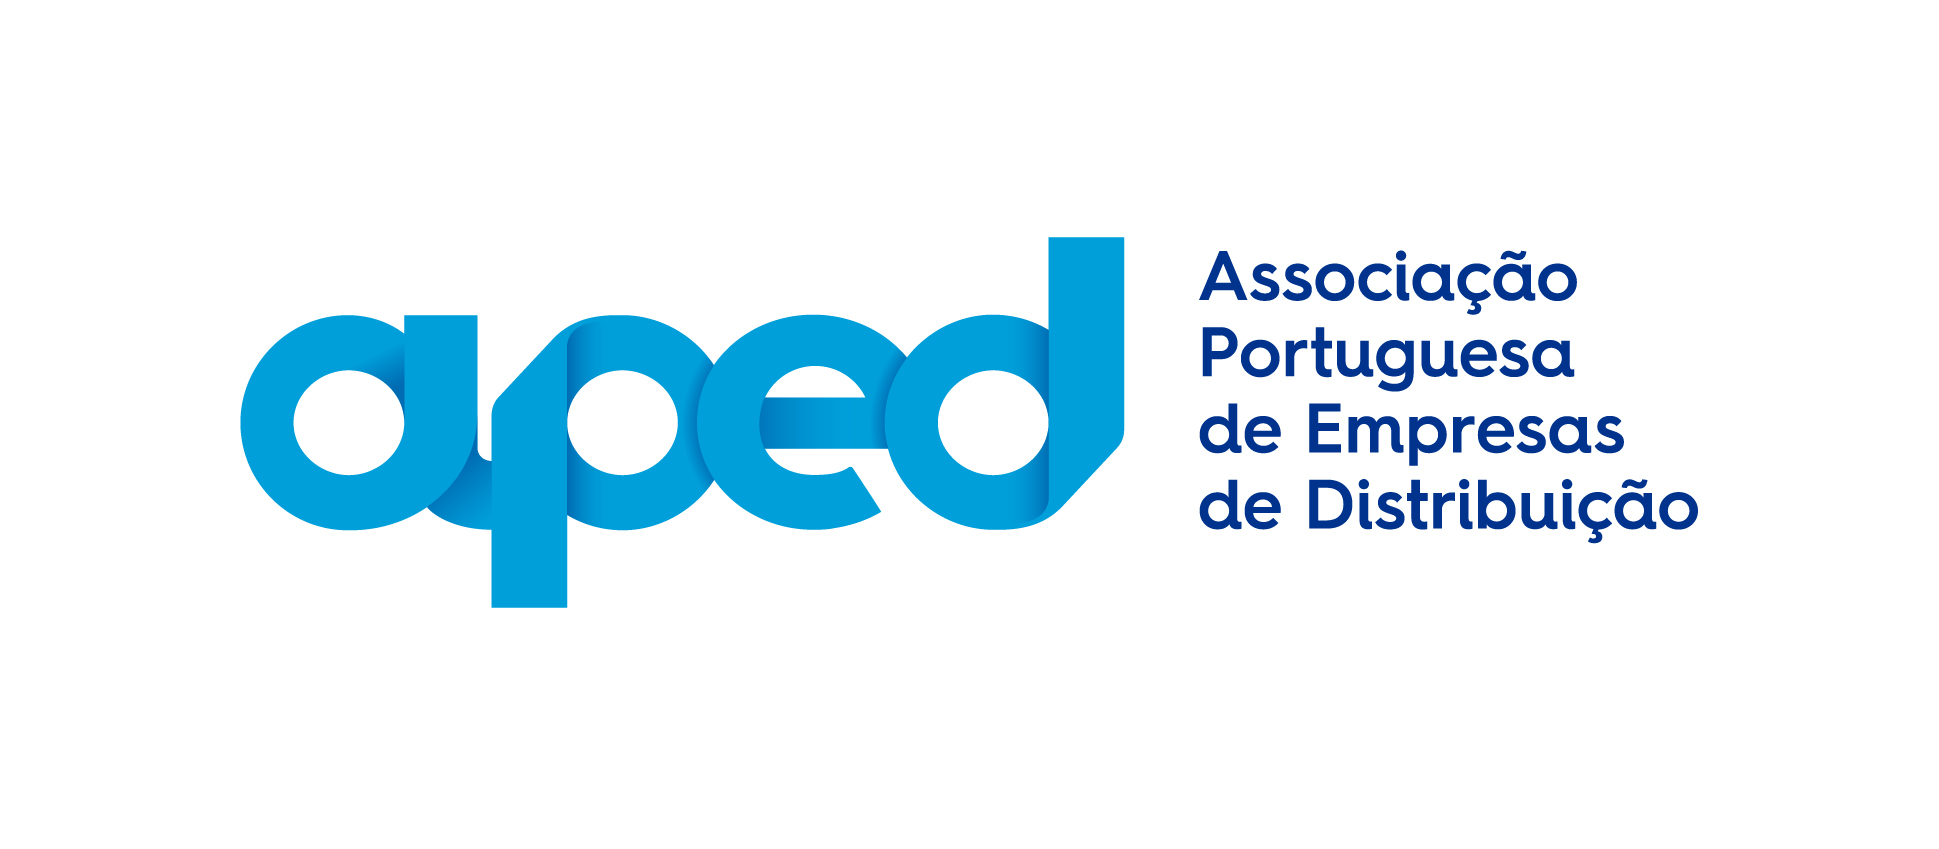 Associação Portuguesa de Empresas de Distribuição